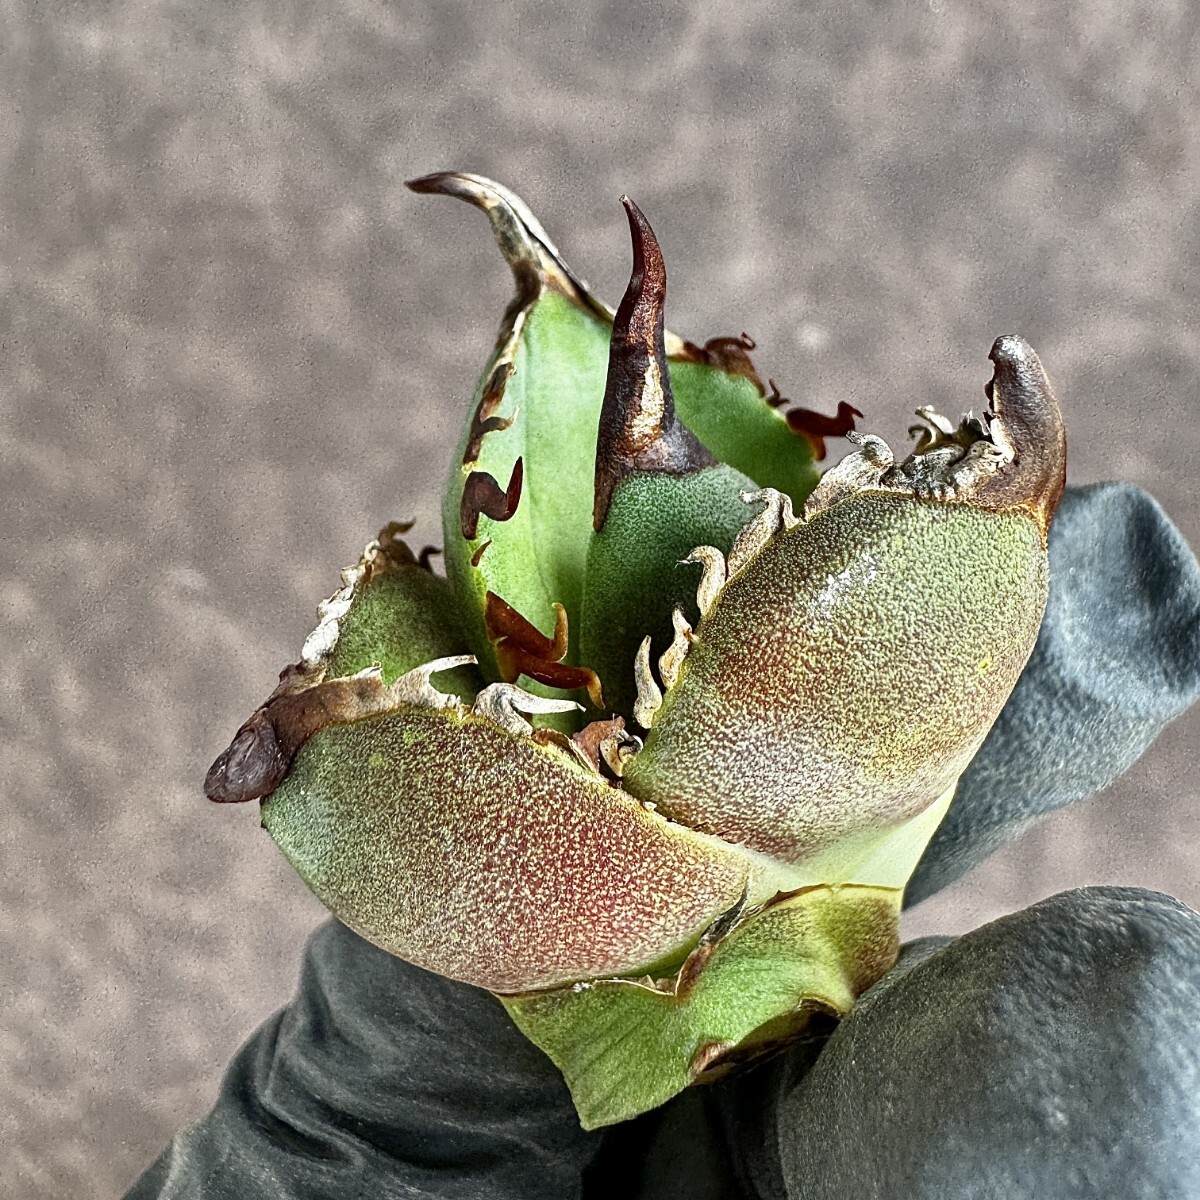 【Lj_plants】H07 アガベ チタノタ 大鋼牙 白排棘 胴切天芽 綺麗株の画像1